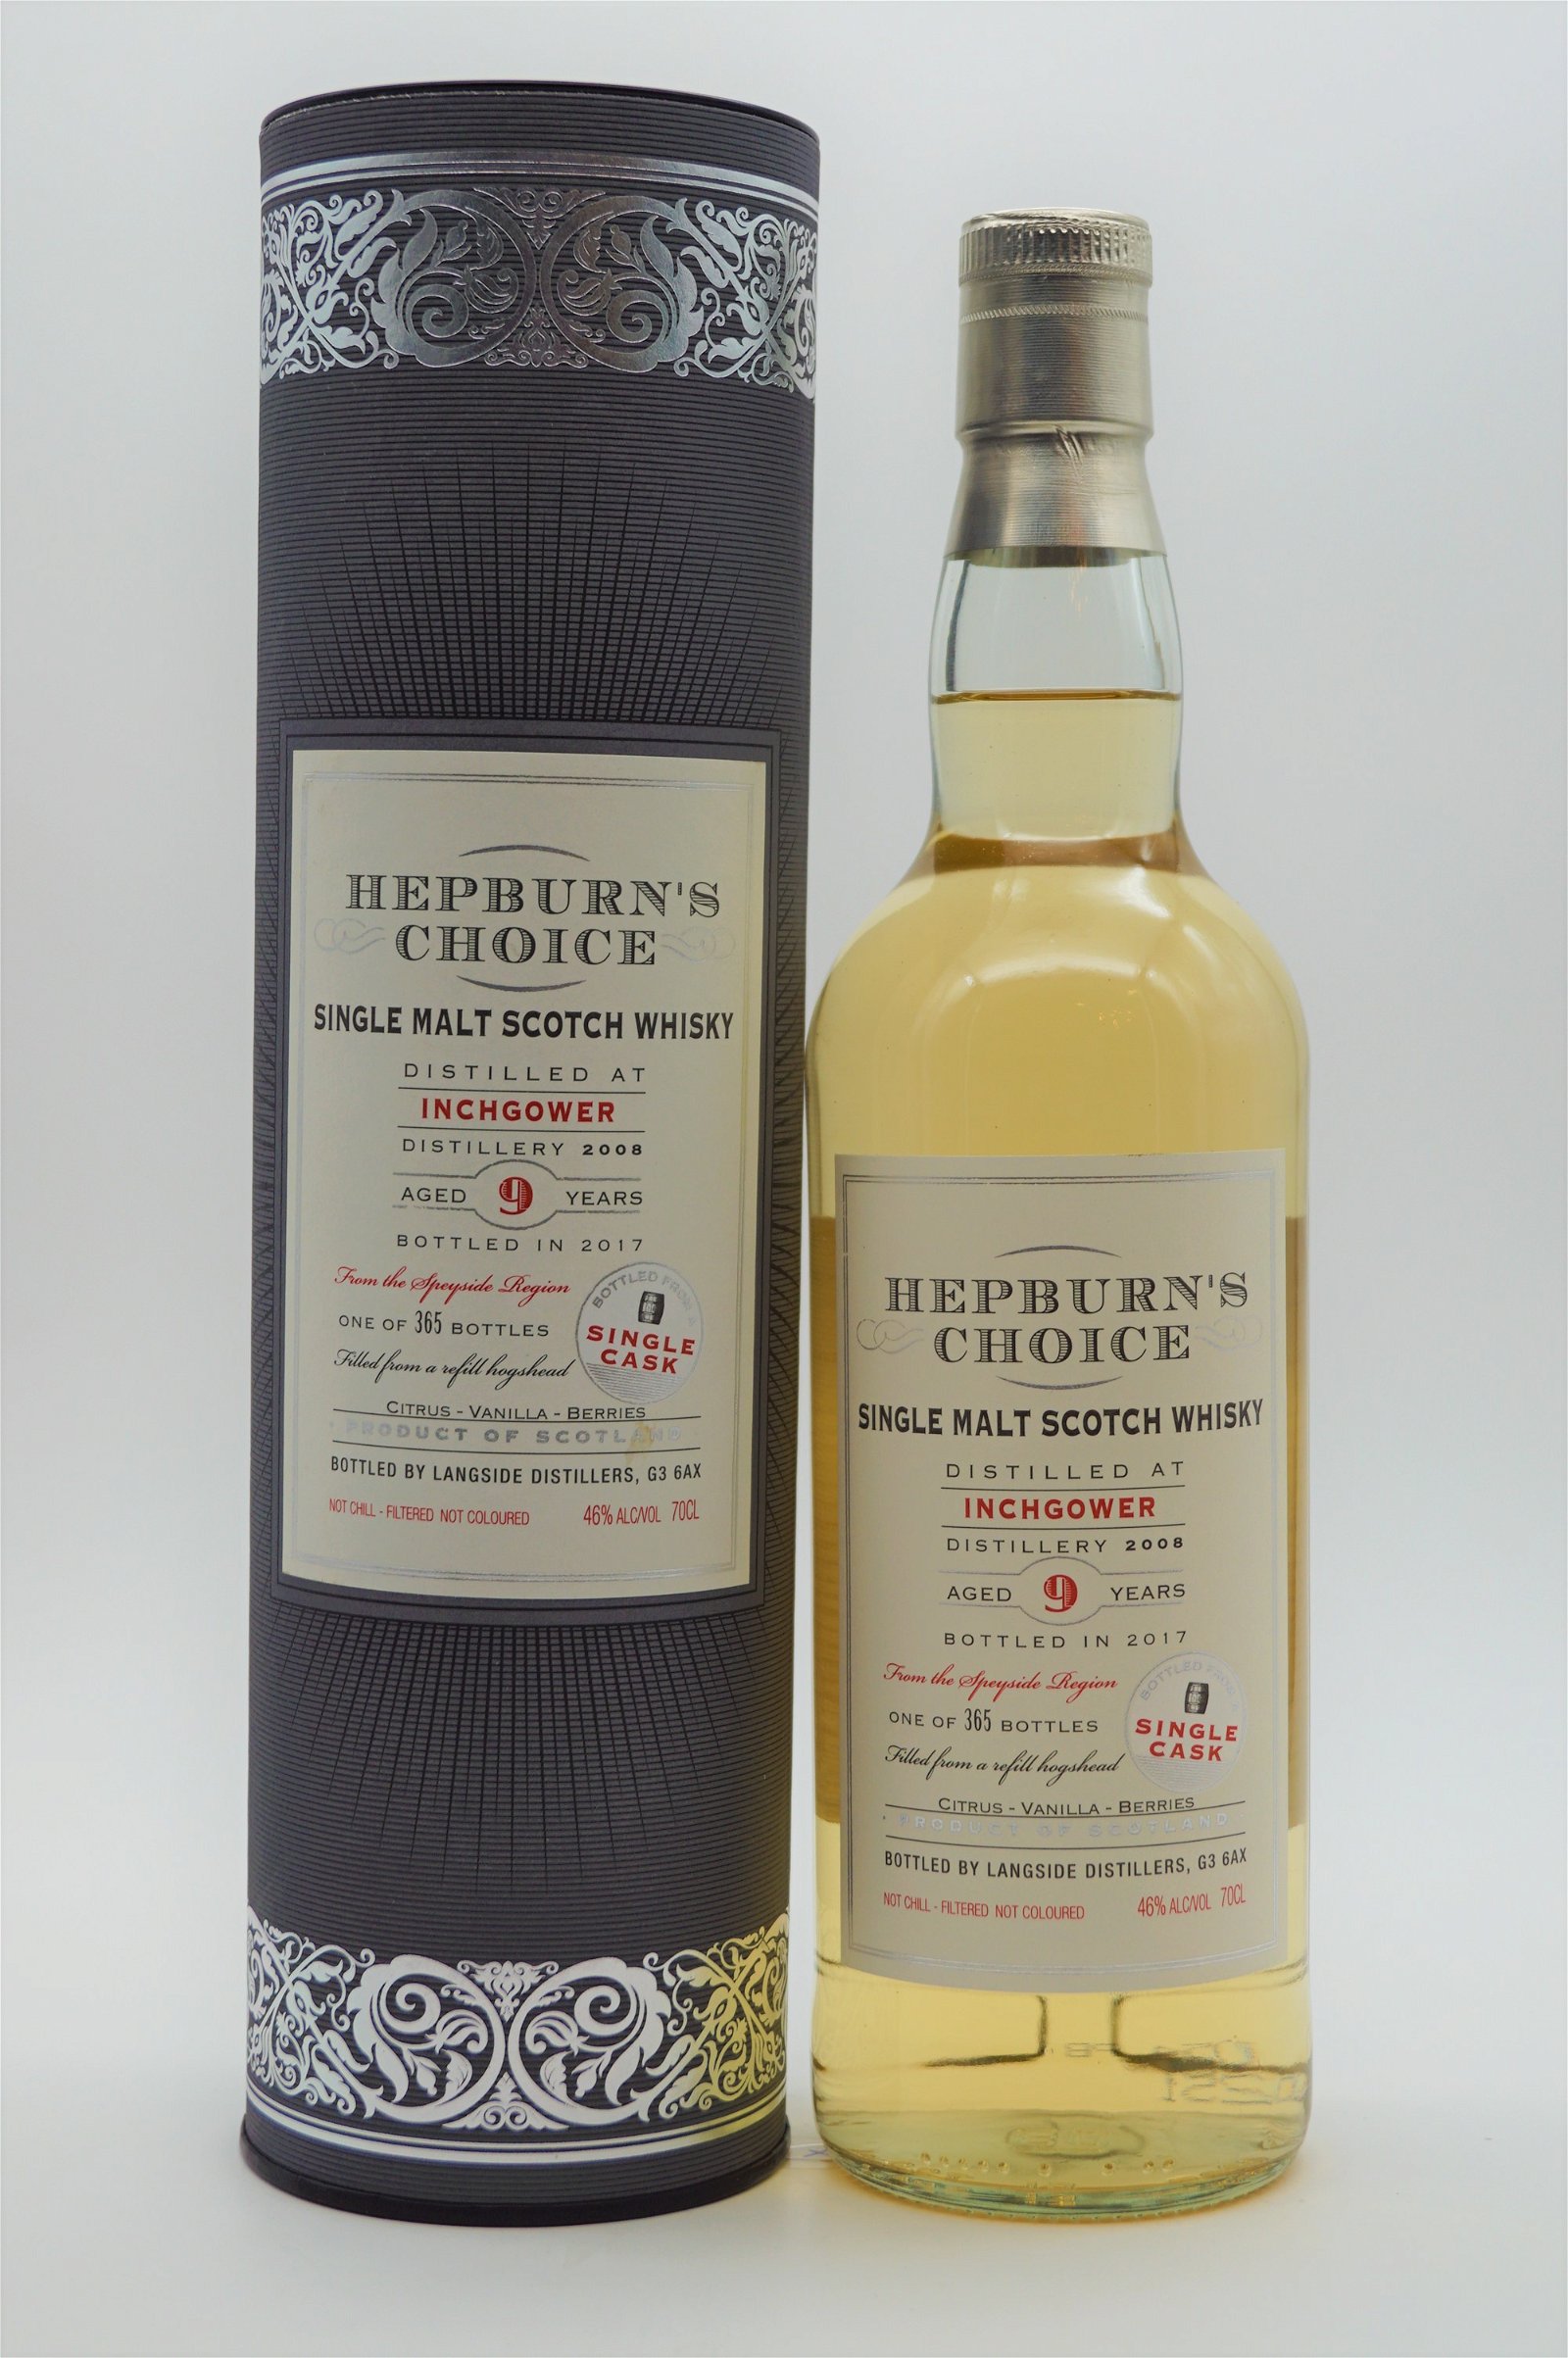 Hepburns Choice Inchgower 9 Jahre 2008/2017 - 365 Fl. Single Malt Scotch